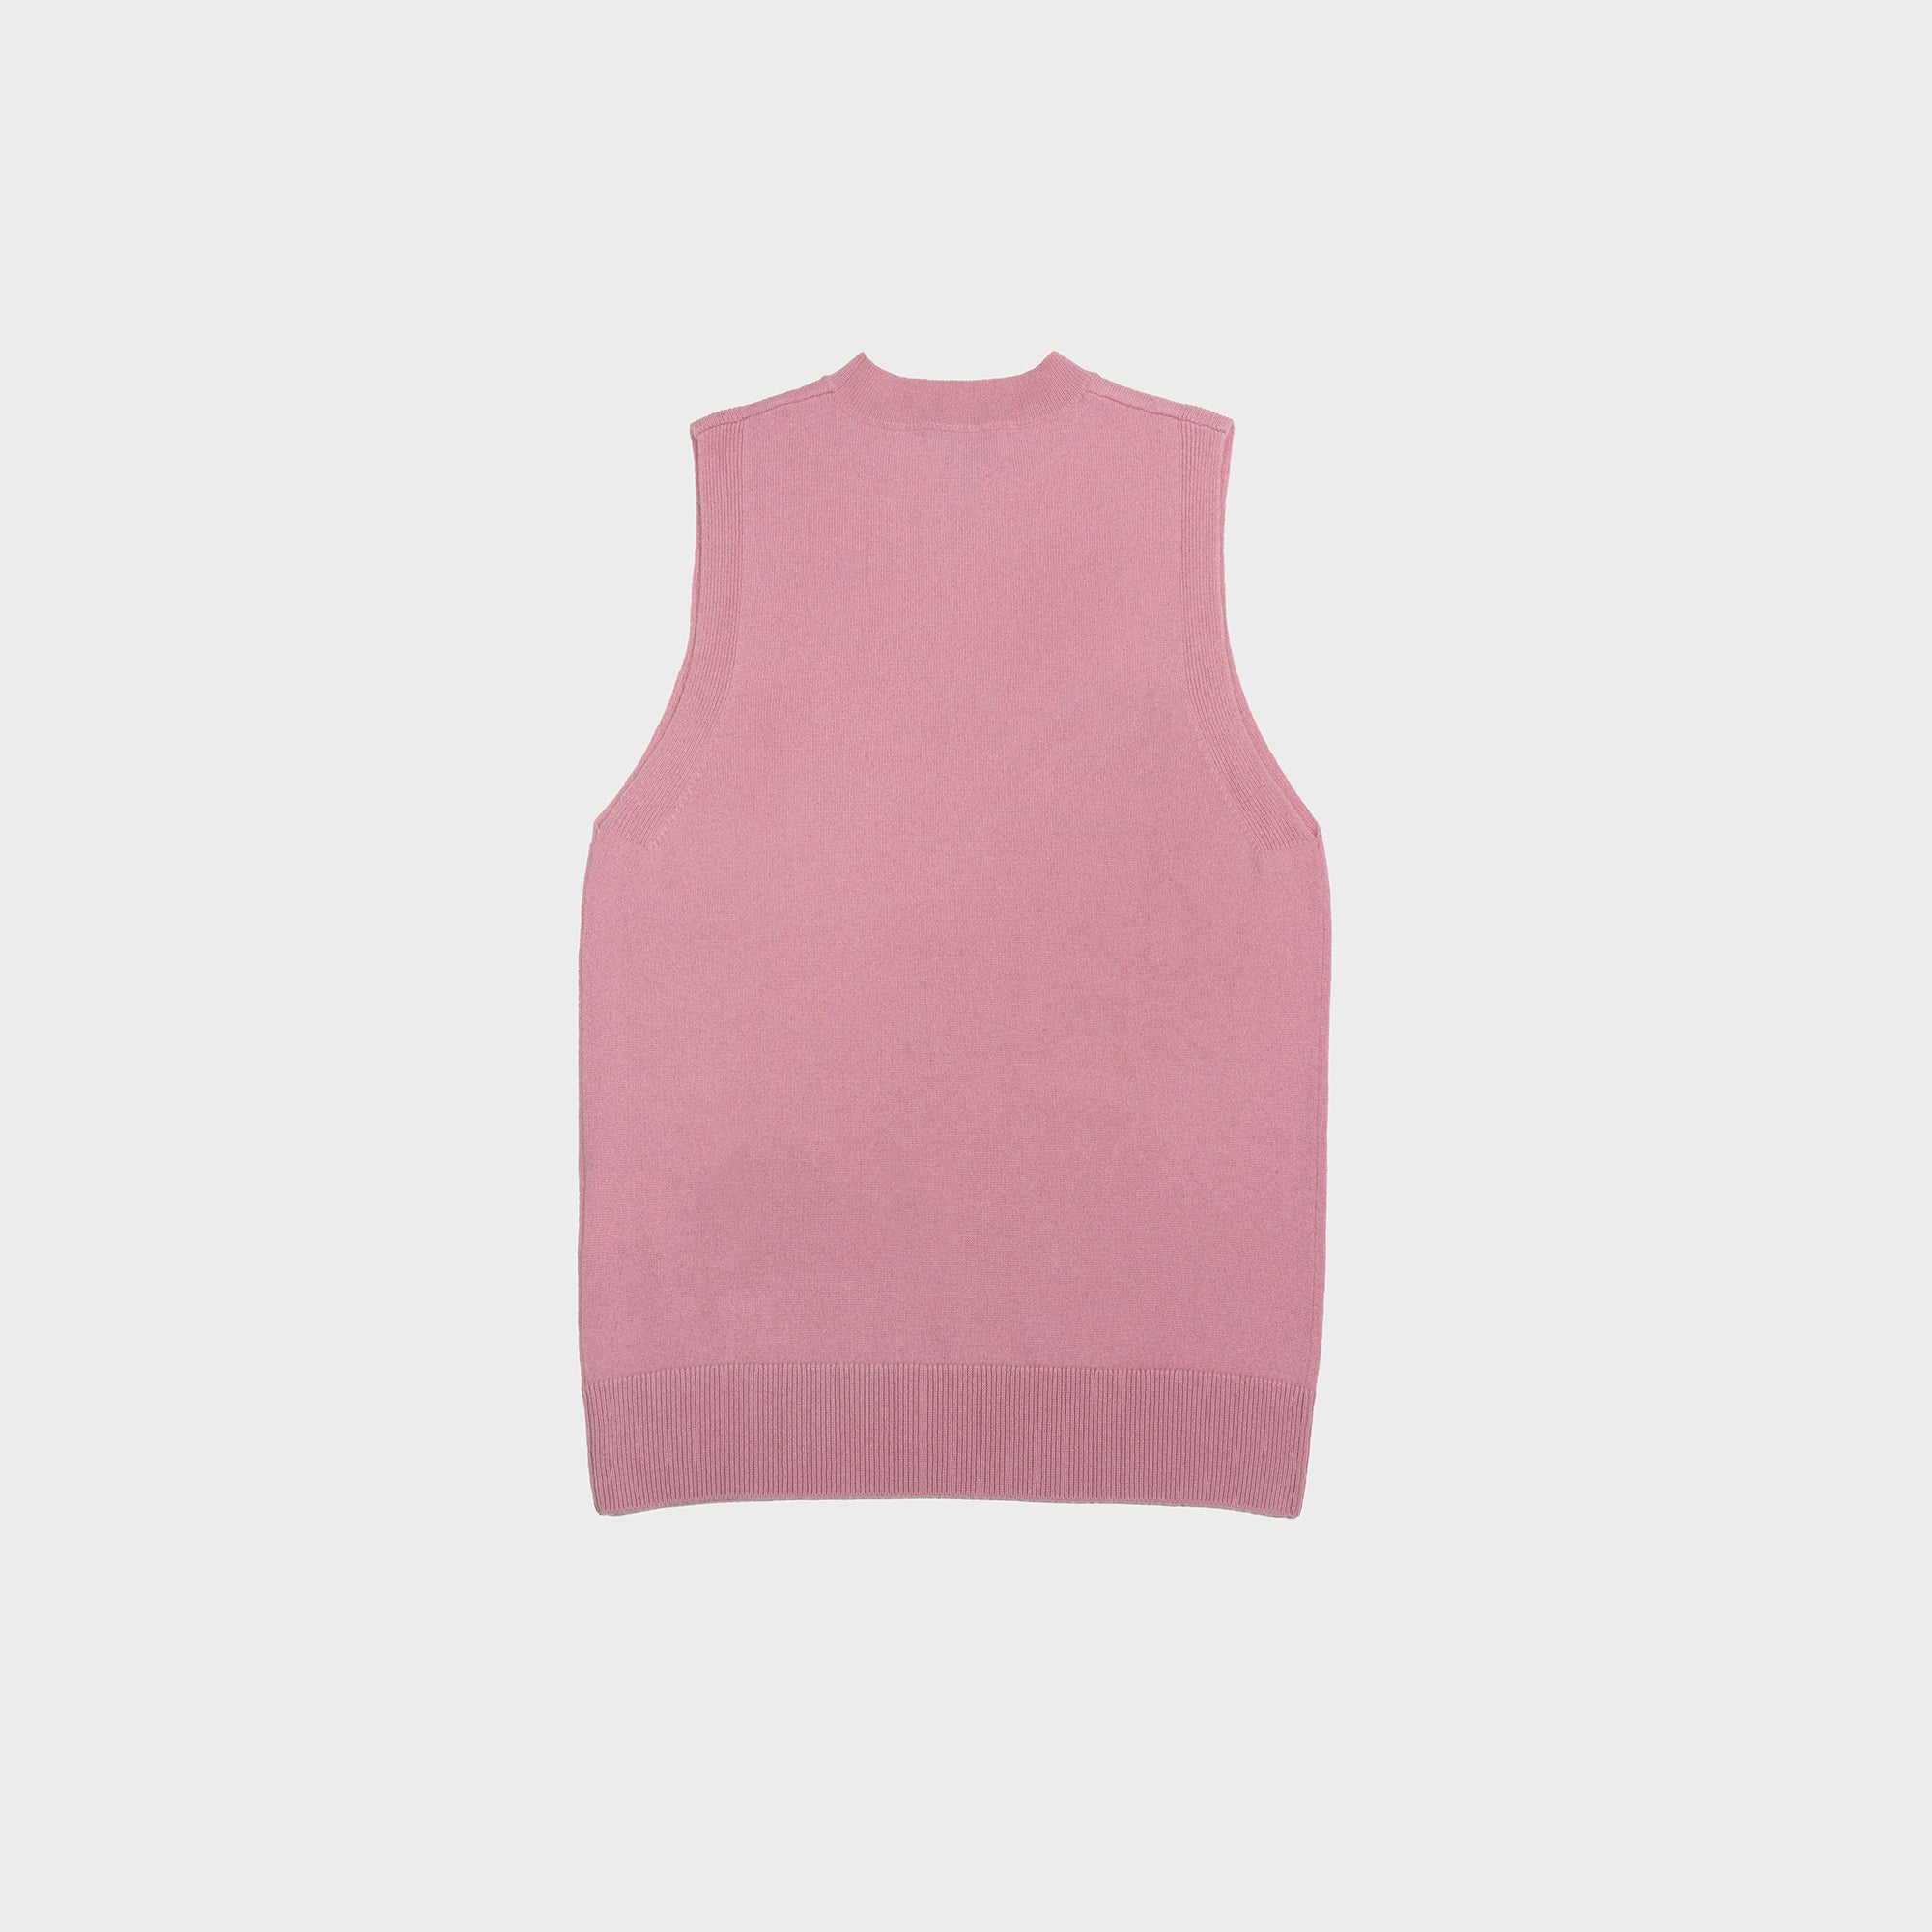 No. 60 Pink Vest